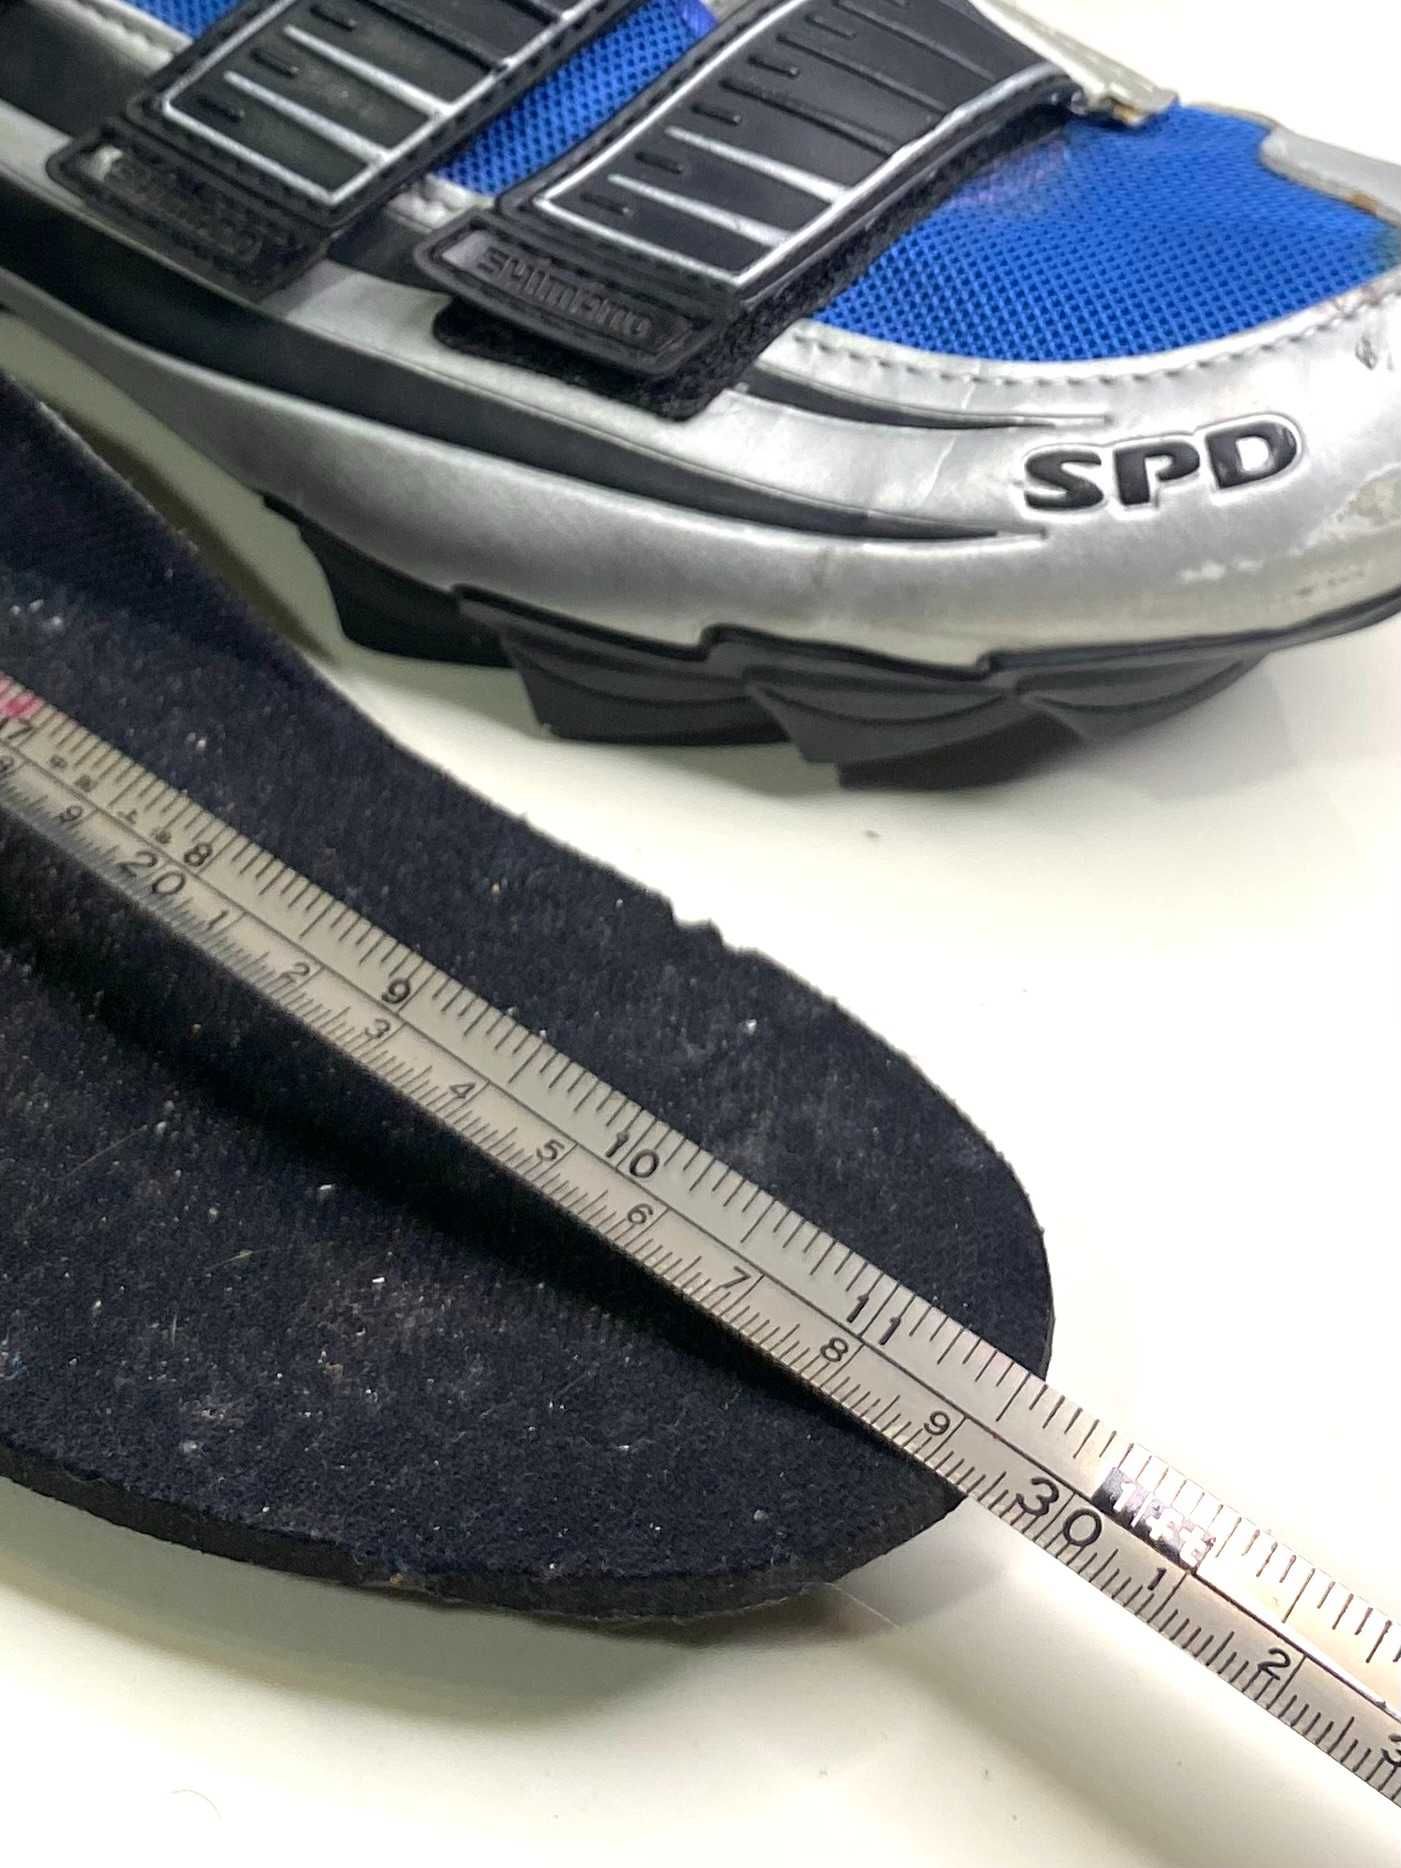 Buty kolarskie Shimano rozmiar 45/ 28,5cm/ 10,5US [szosa, rower, spd]